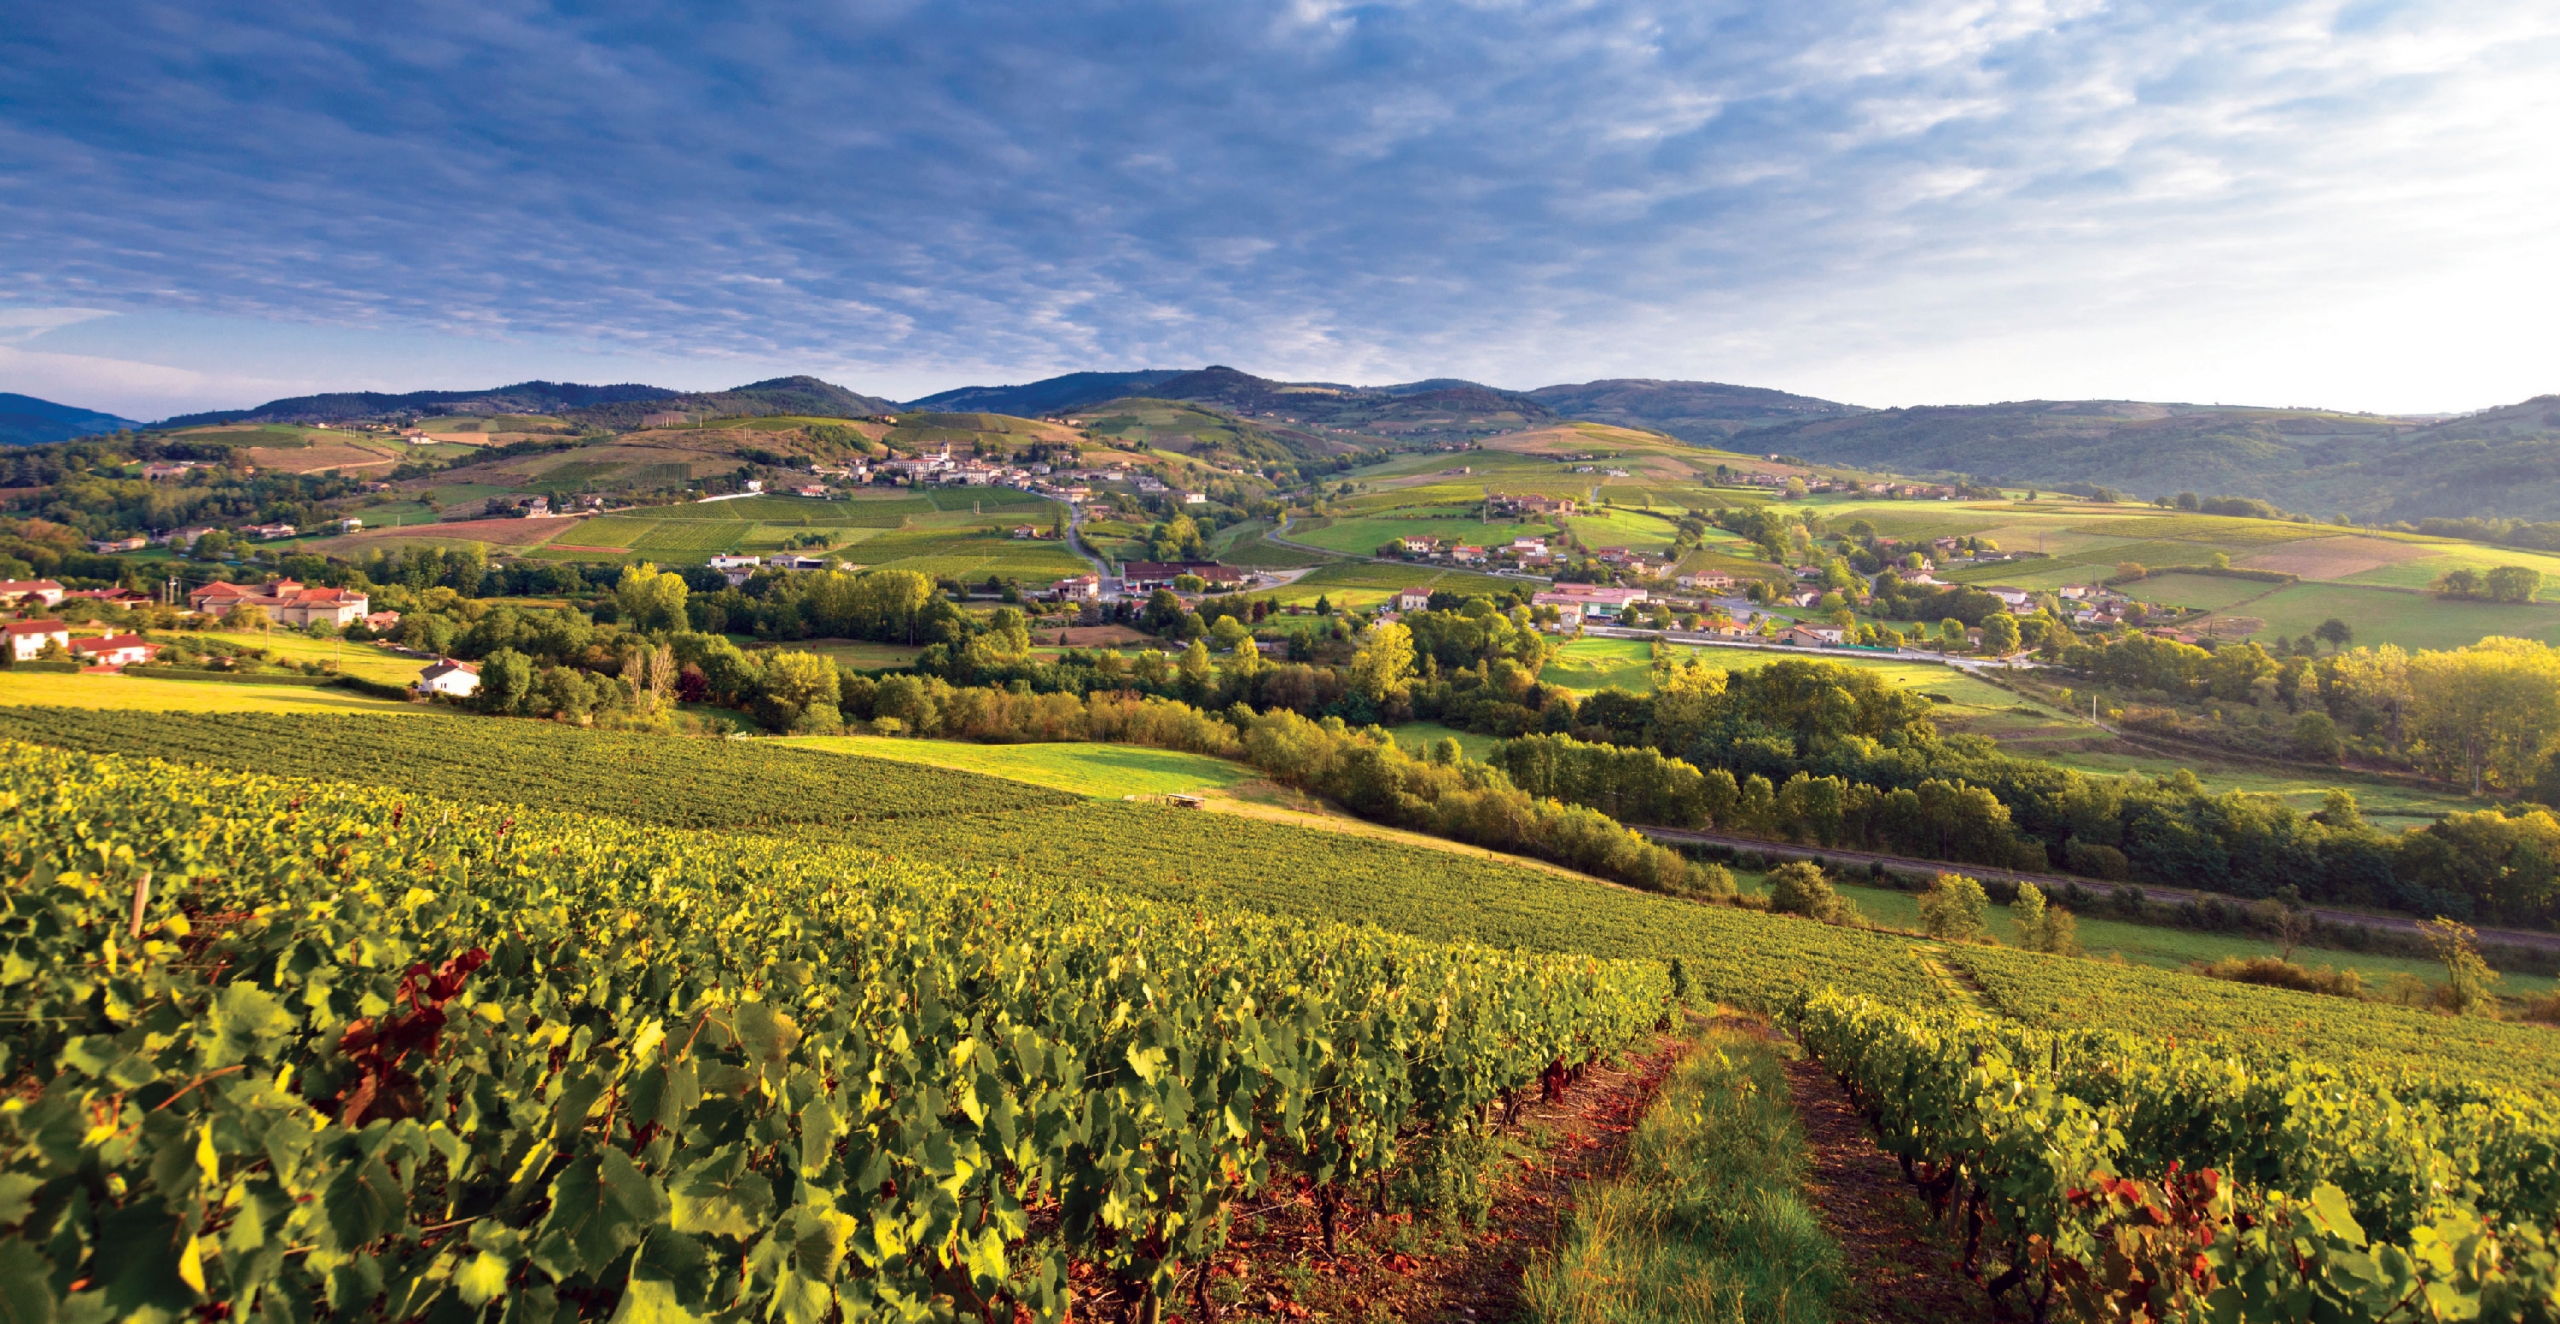 France: The Burgundy Wine Region & Dijon
